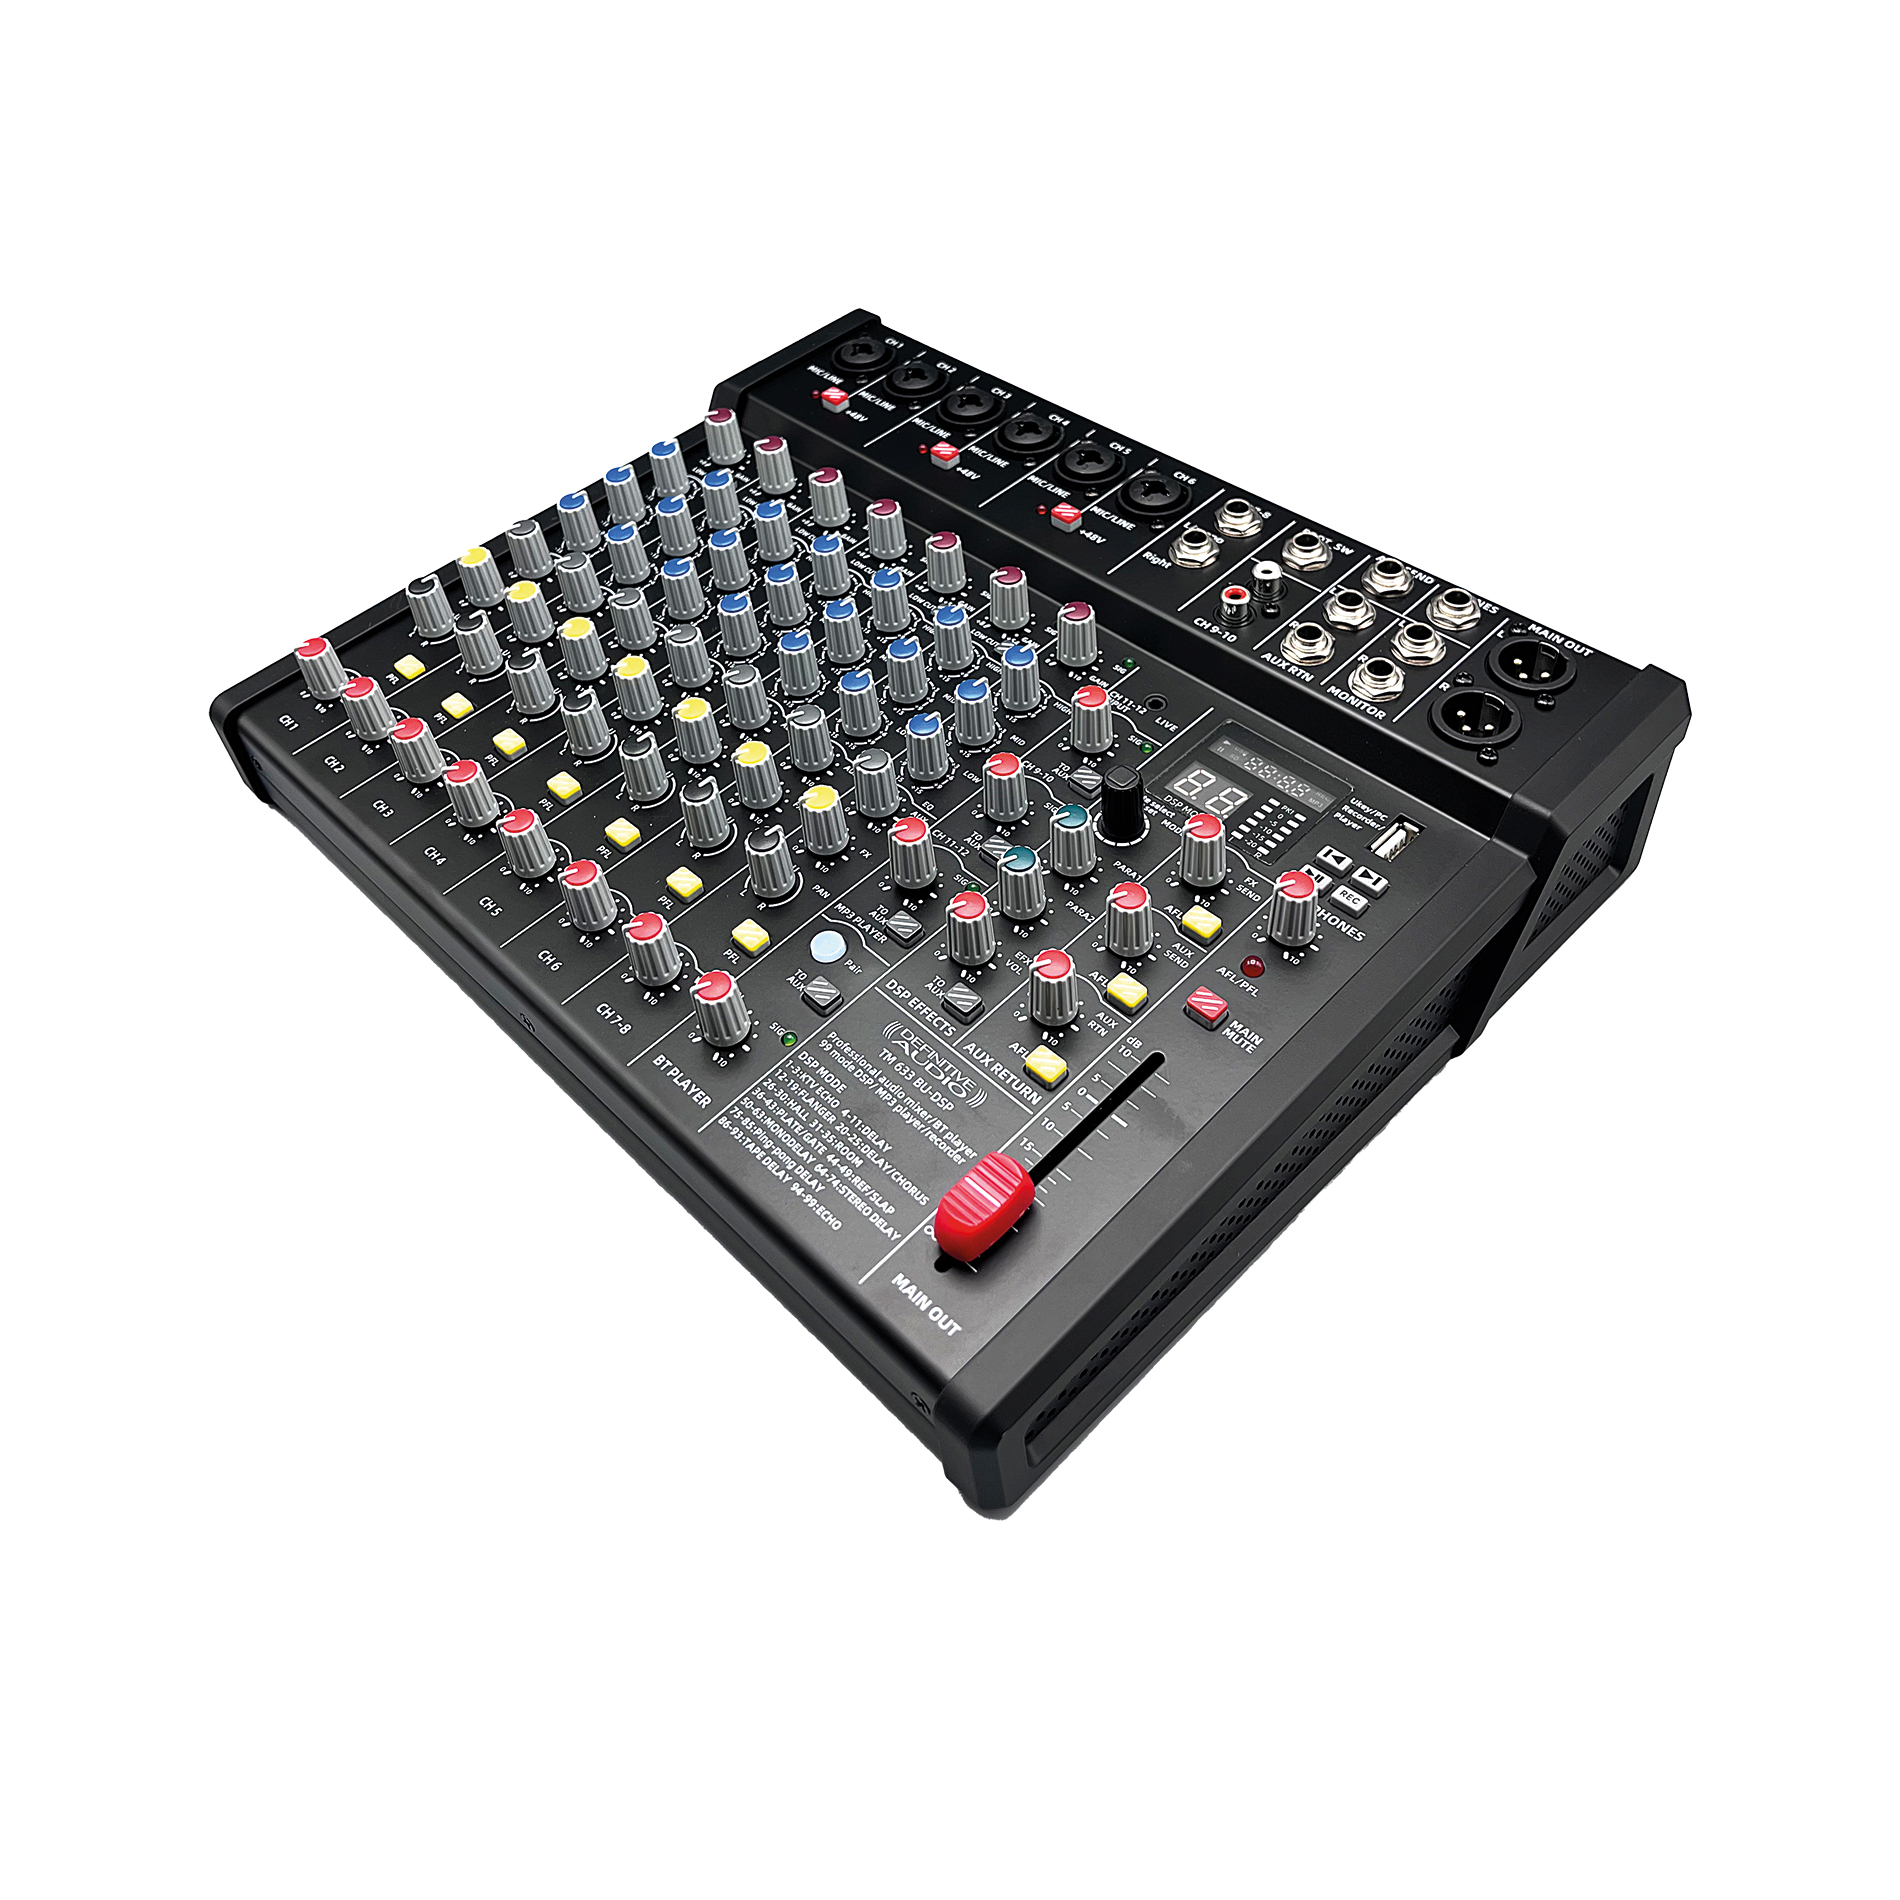 Definitive Audio Tm 633 Bu-dsp - Table De Mixage Analogique - Variation 3